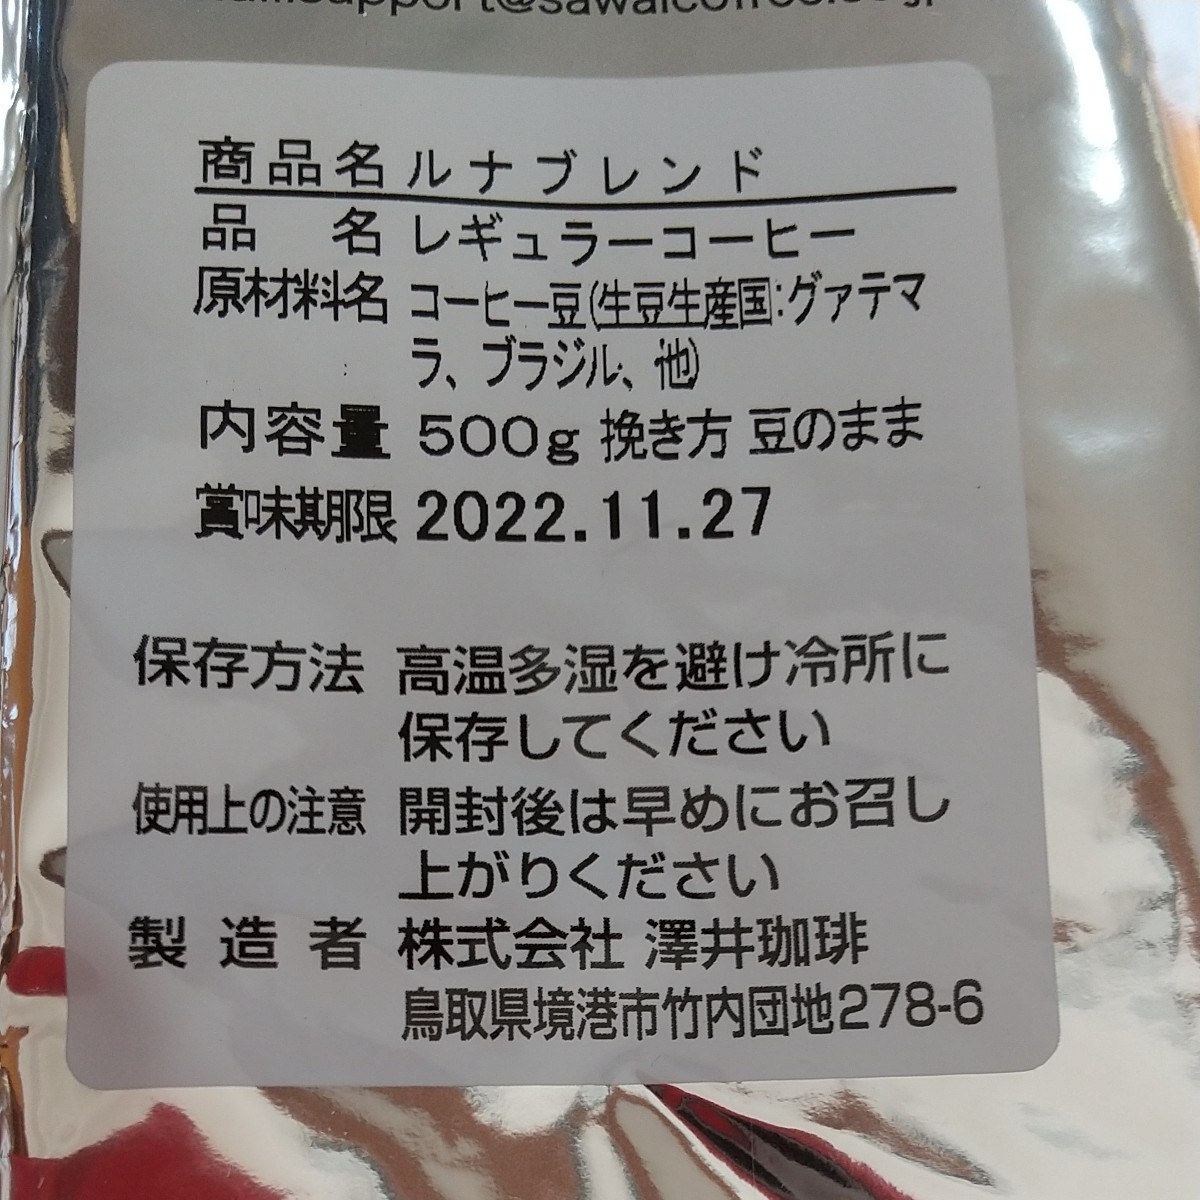 澤井珈琲 ルナブレンド 豆のまま500g